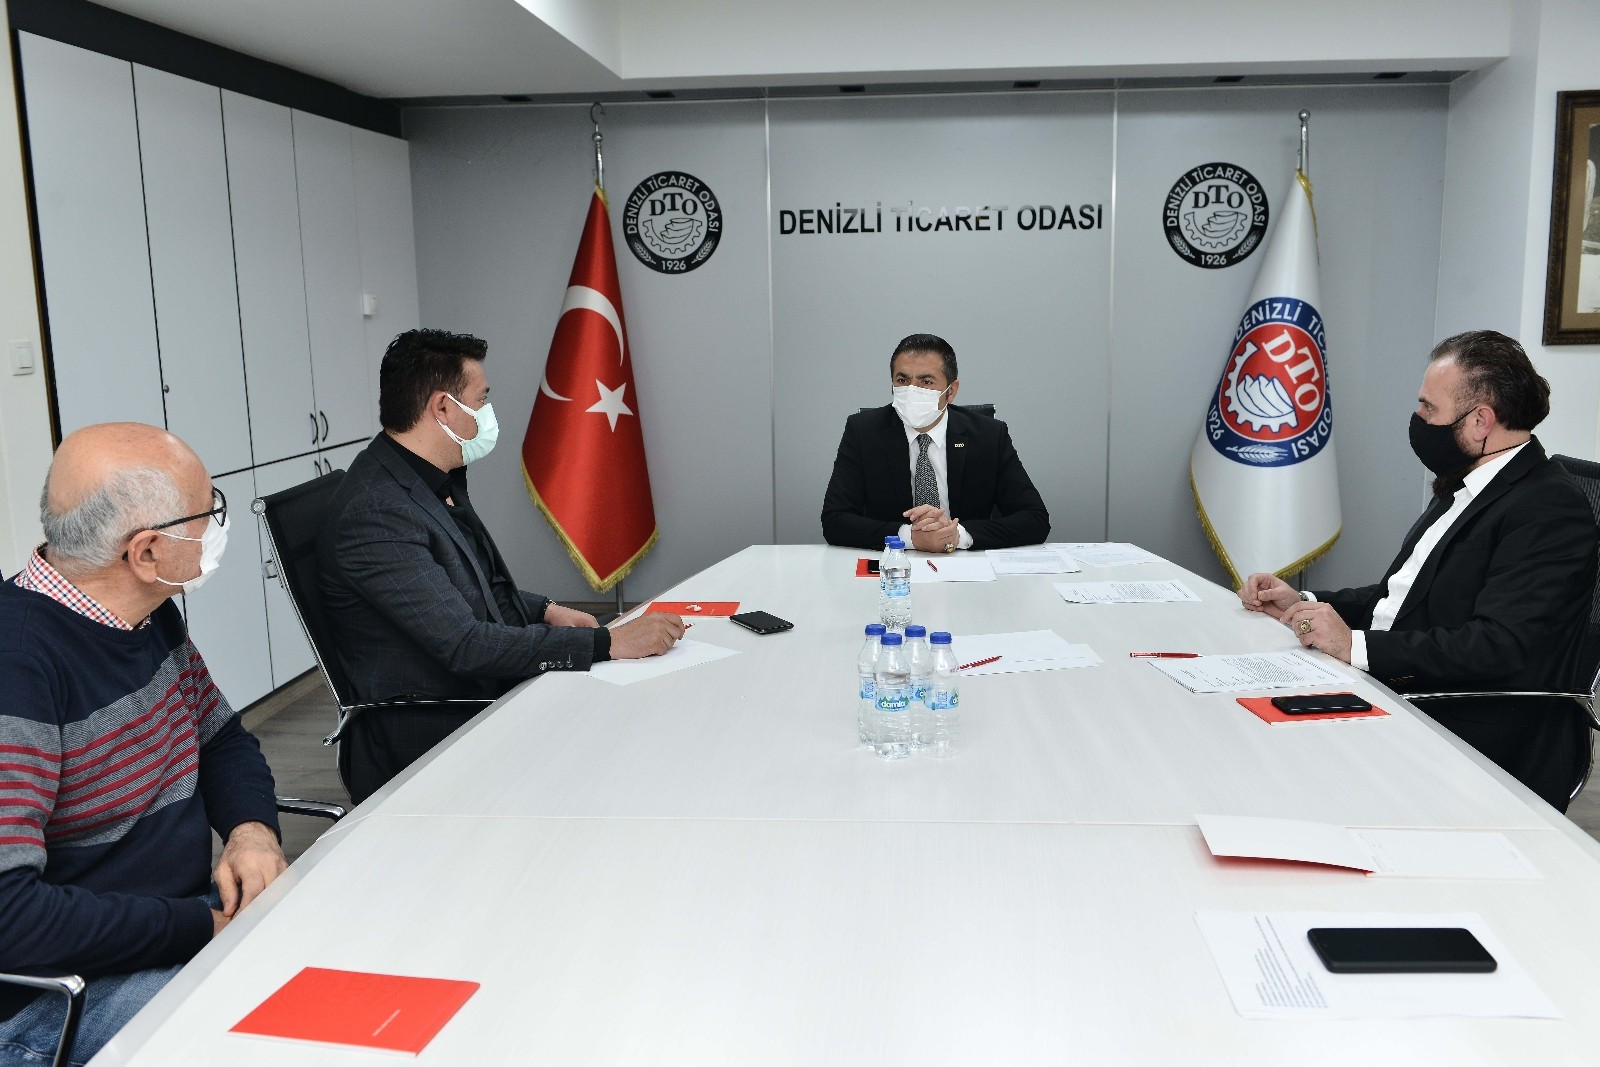 Başkan Erdoğan: “Emlakçı üyelerimizin yanındayız”